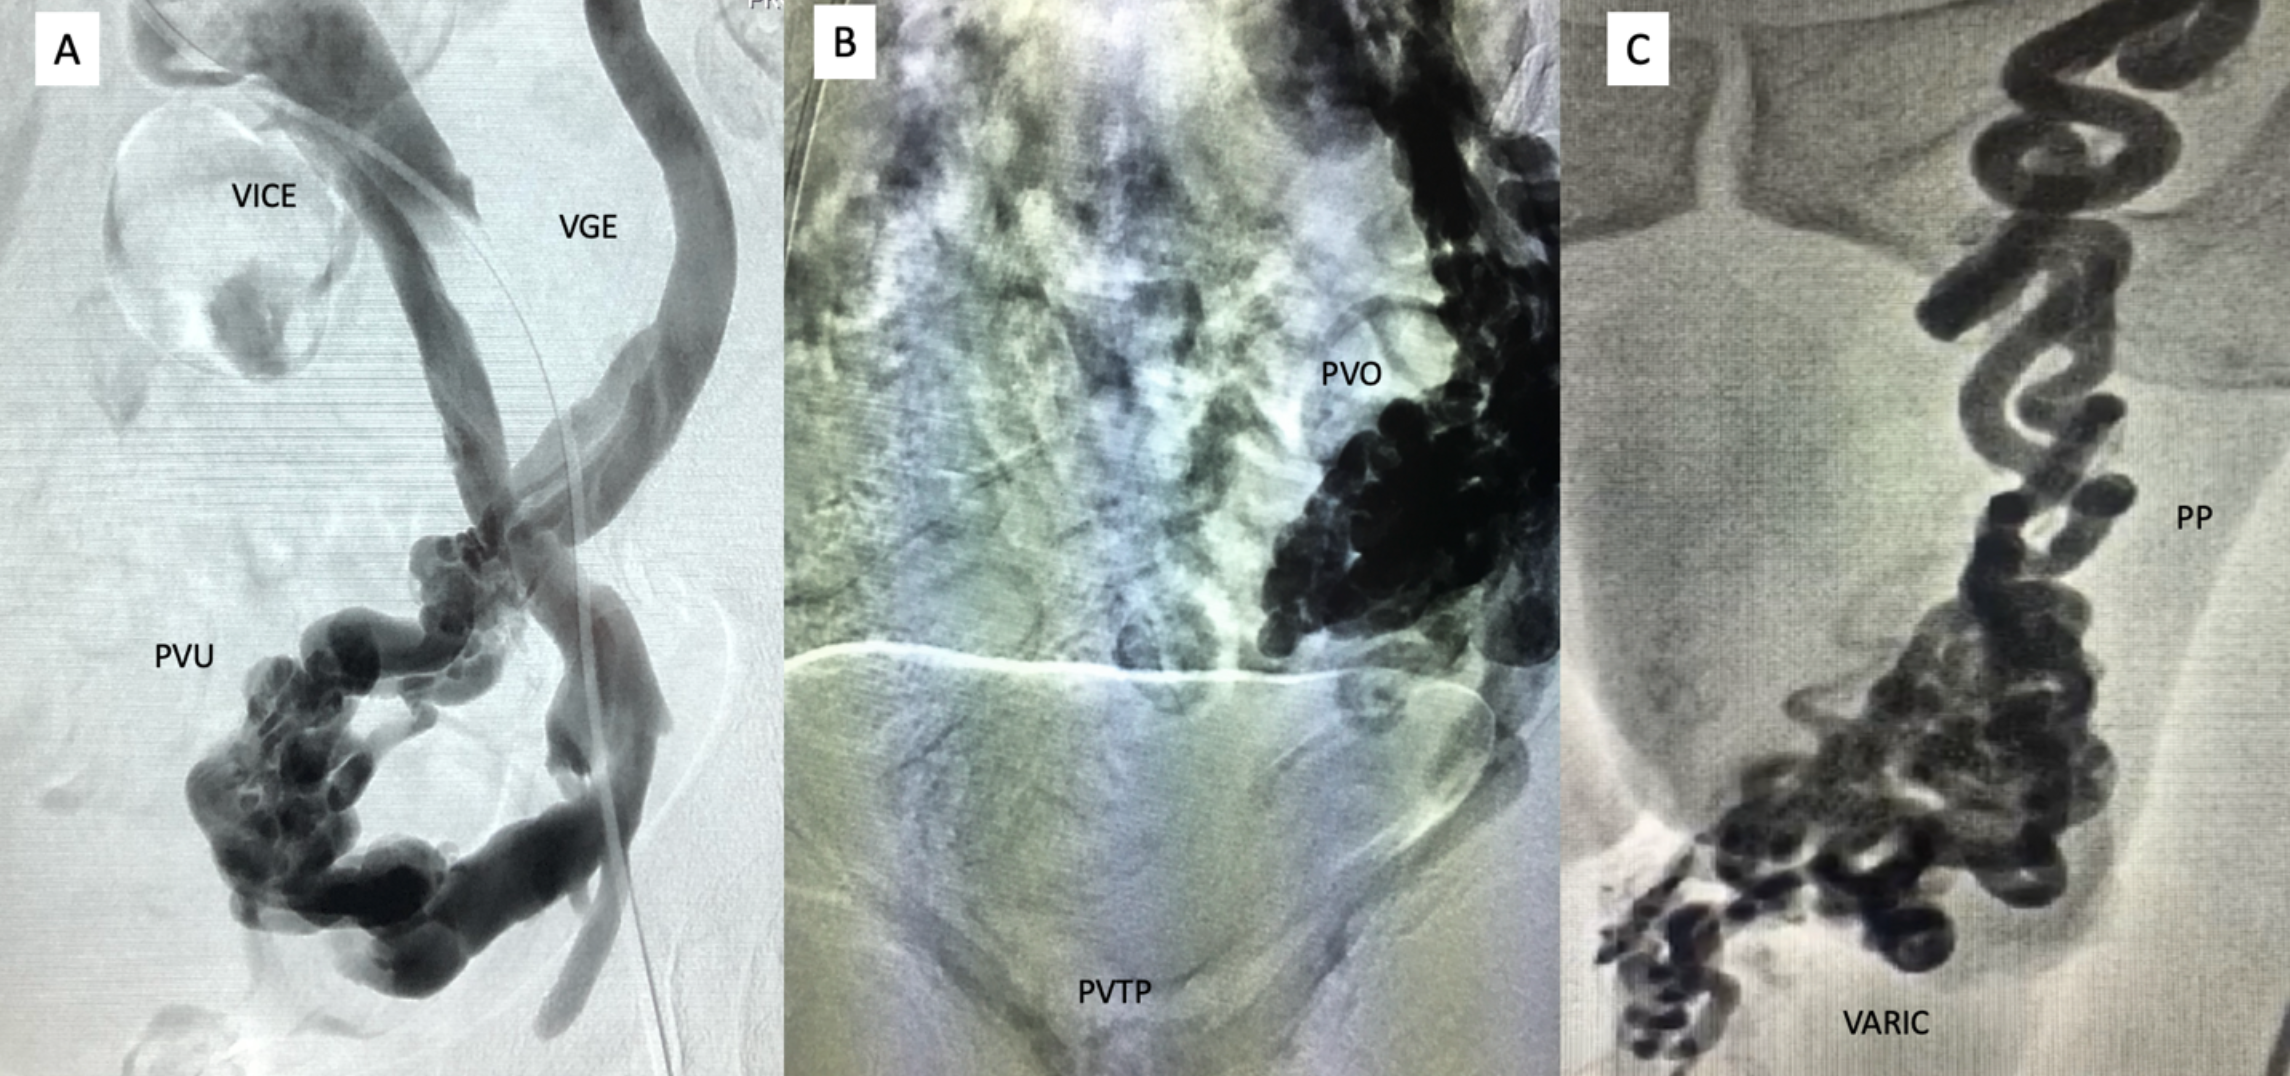 Figura 3 - Venografia por subtração digital demonstrando (A): refluxo em veia gonodal esquerda (VGE), no plexo venoso uterino (PVU), e na veia ilíaca comum esquerda (VICE); (B): Refluxo em veia gonadal, em plexo venoso ovariano (PVO) e plexo venoso trans-púbico (PVTP); (C): refluxo em veia espermática, plexo pampiniforme (PP) esquerdo. 